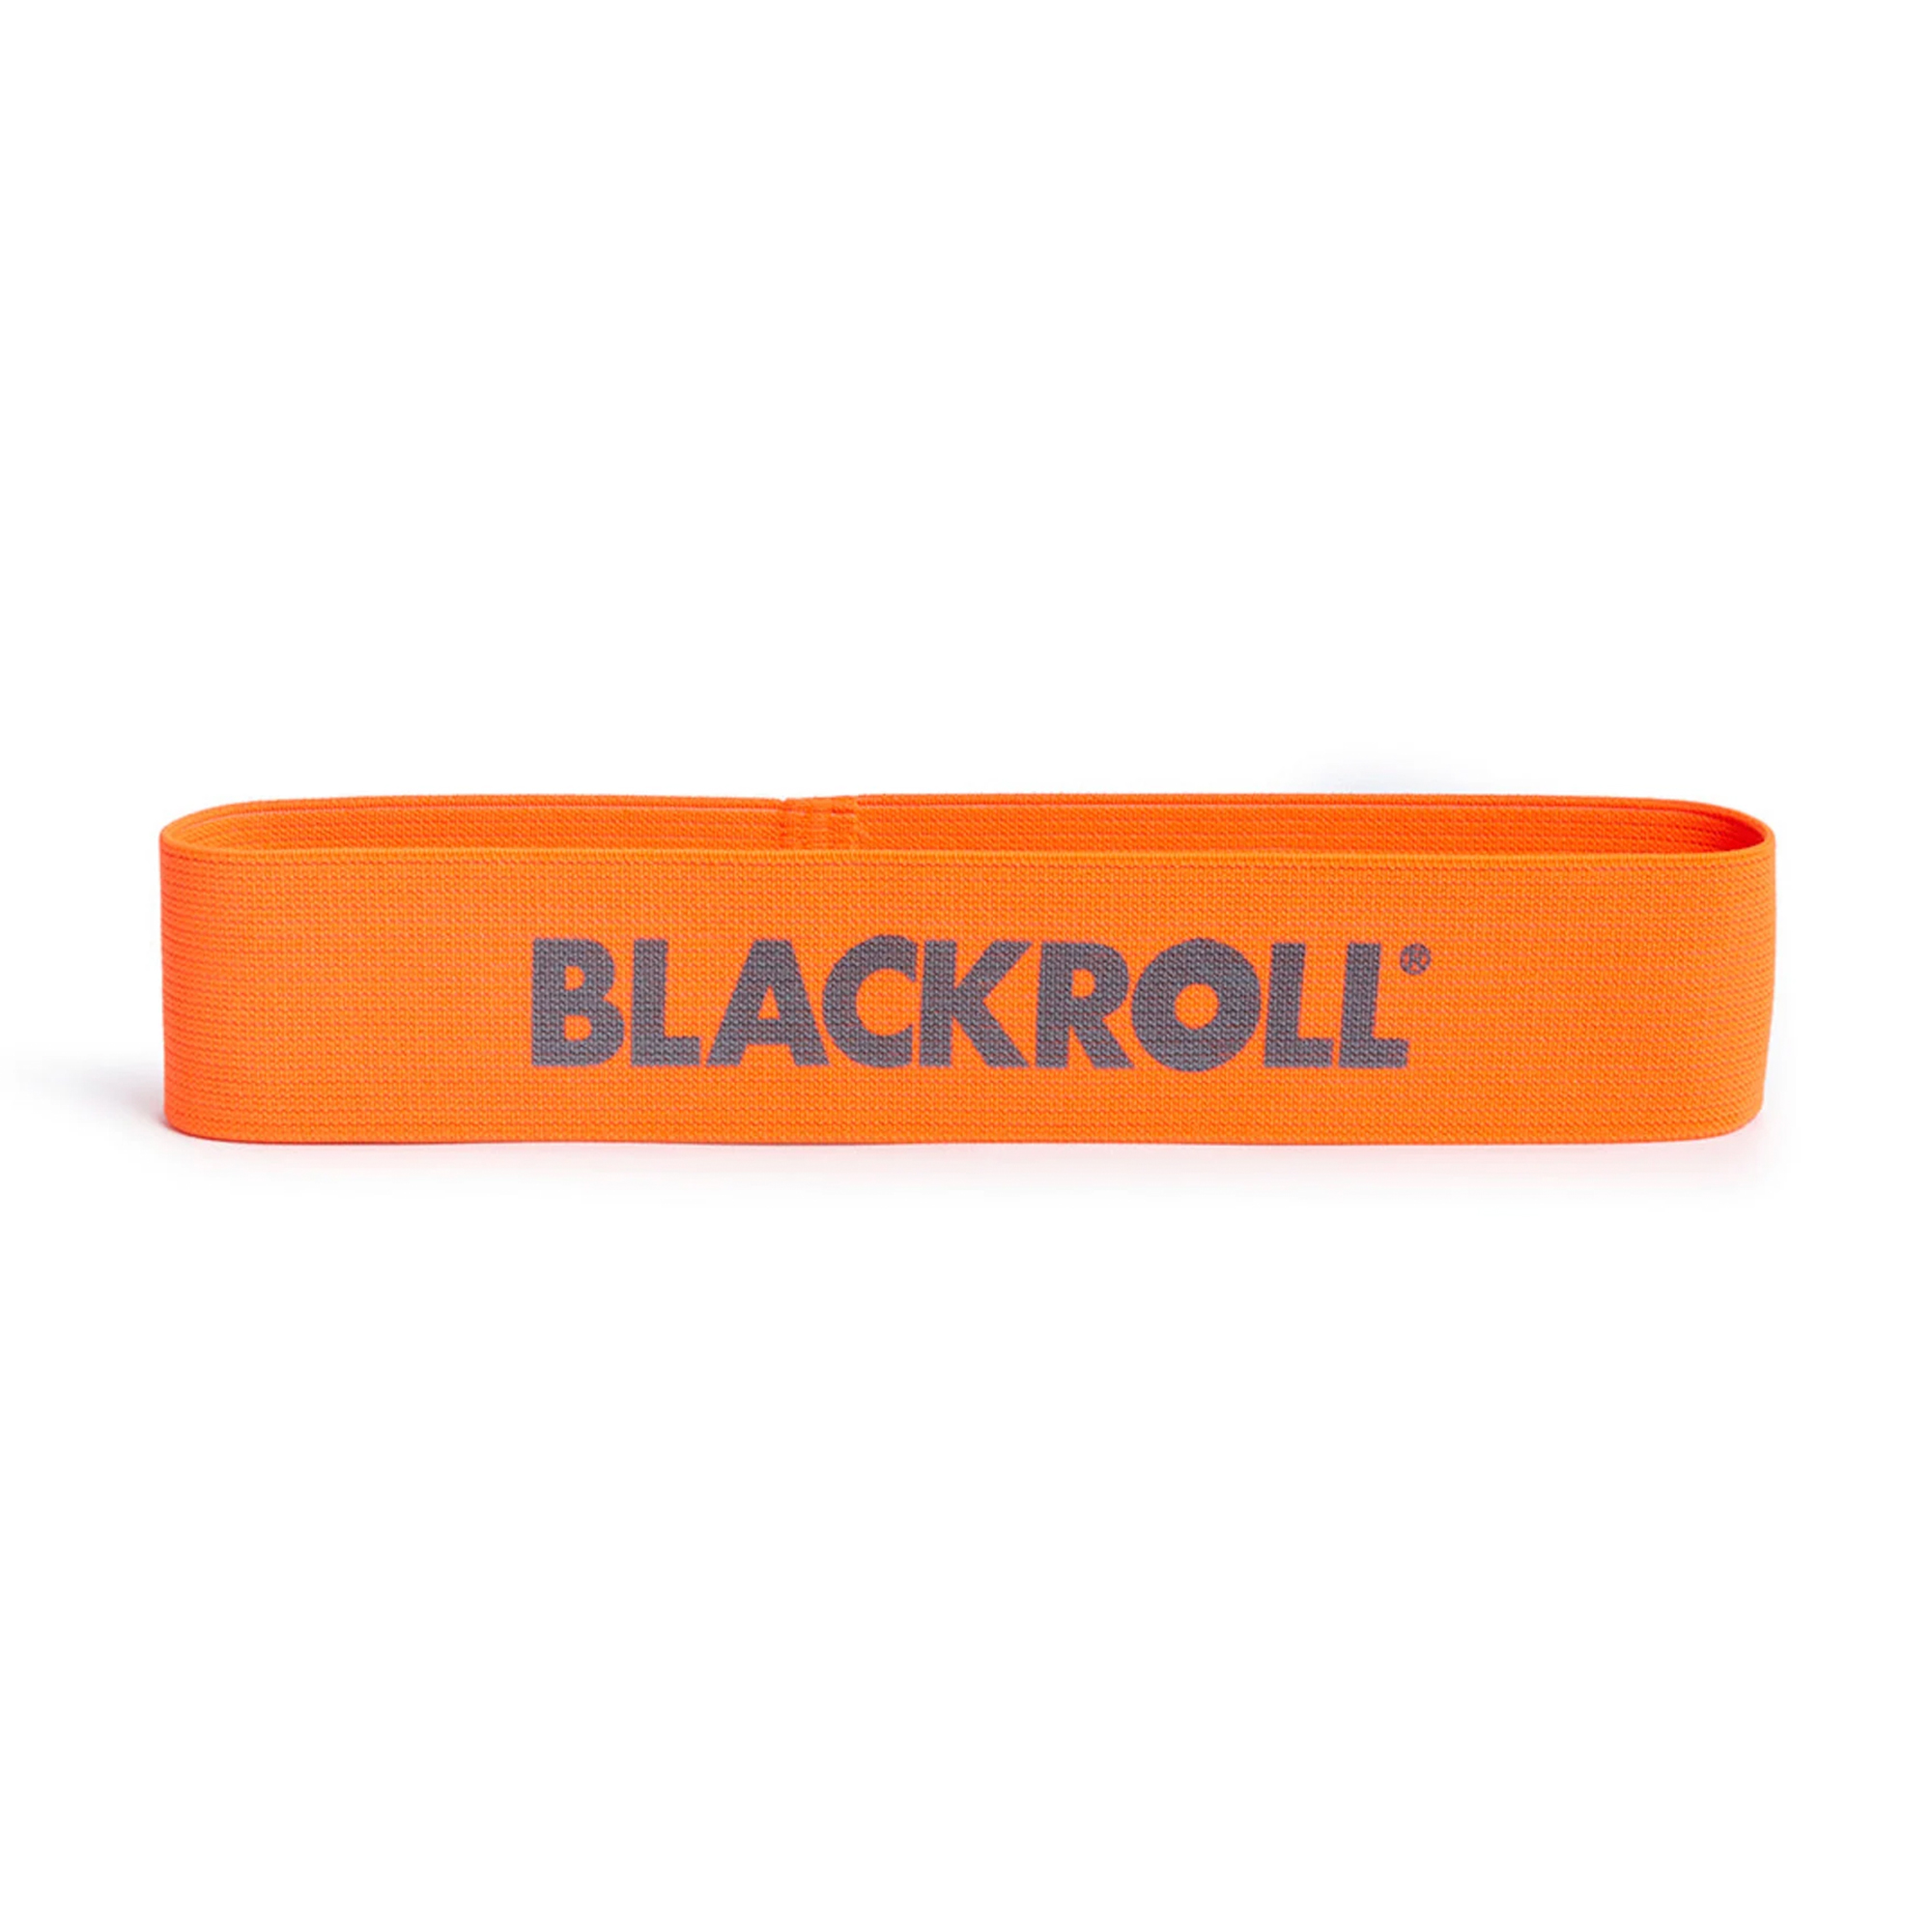 Blackroll Loop Band Træningselastik - Let (30 cm)